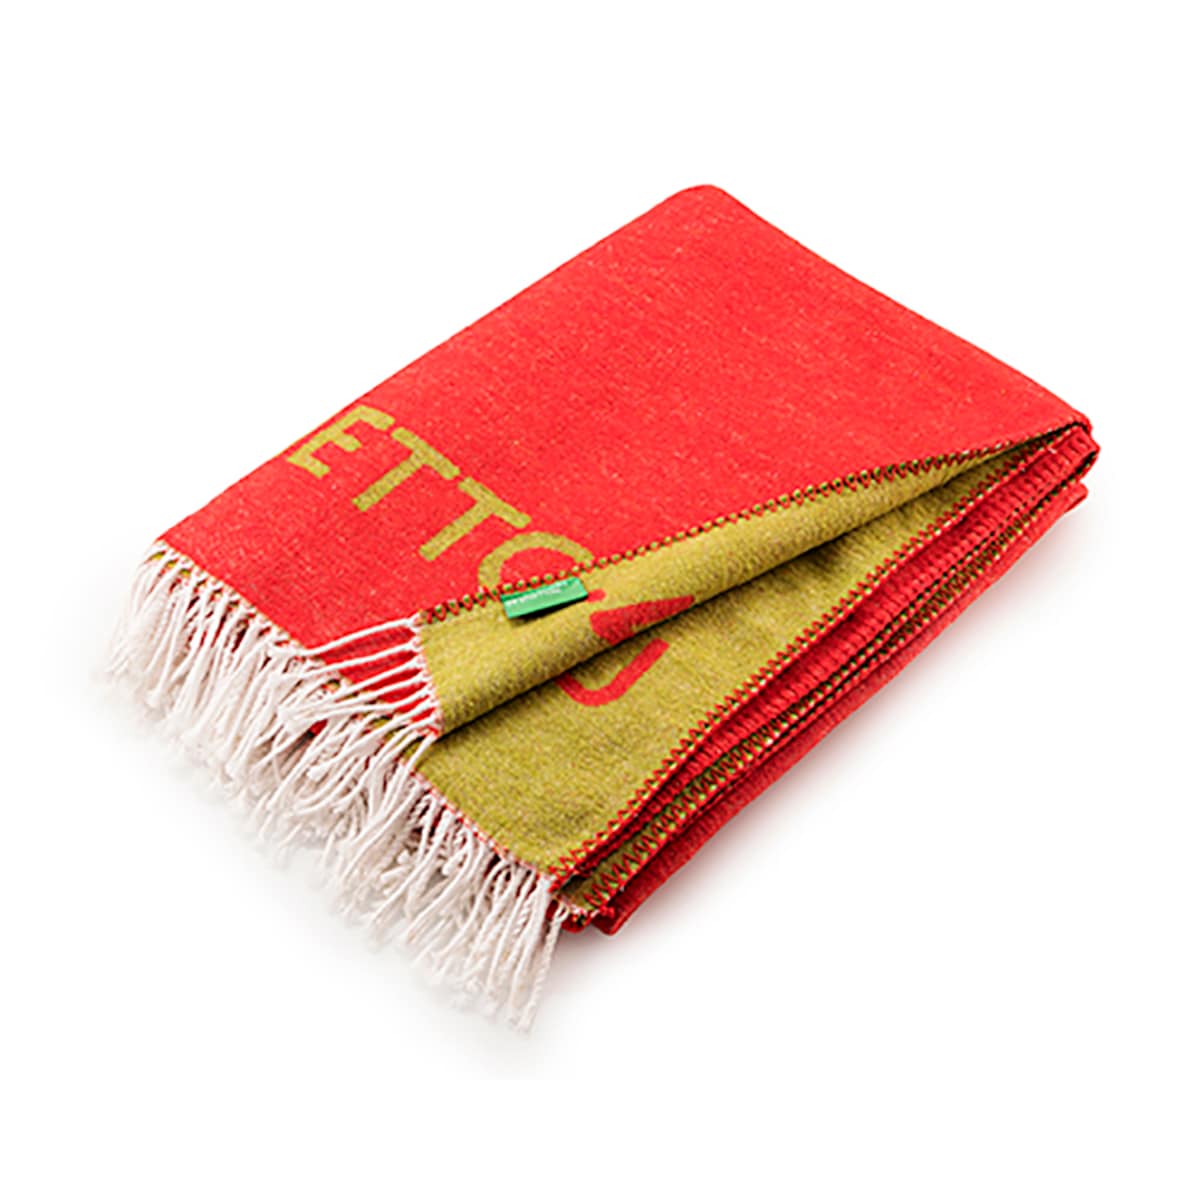 цена Декоративное одеяло из хлопка и акрила Tevere. United Colors of Benetton, красный